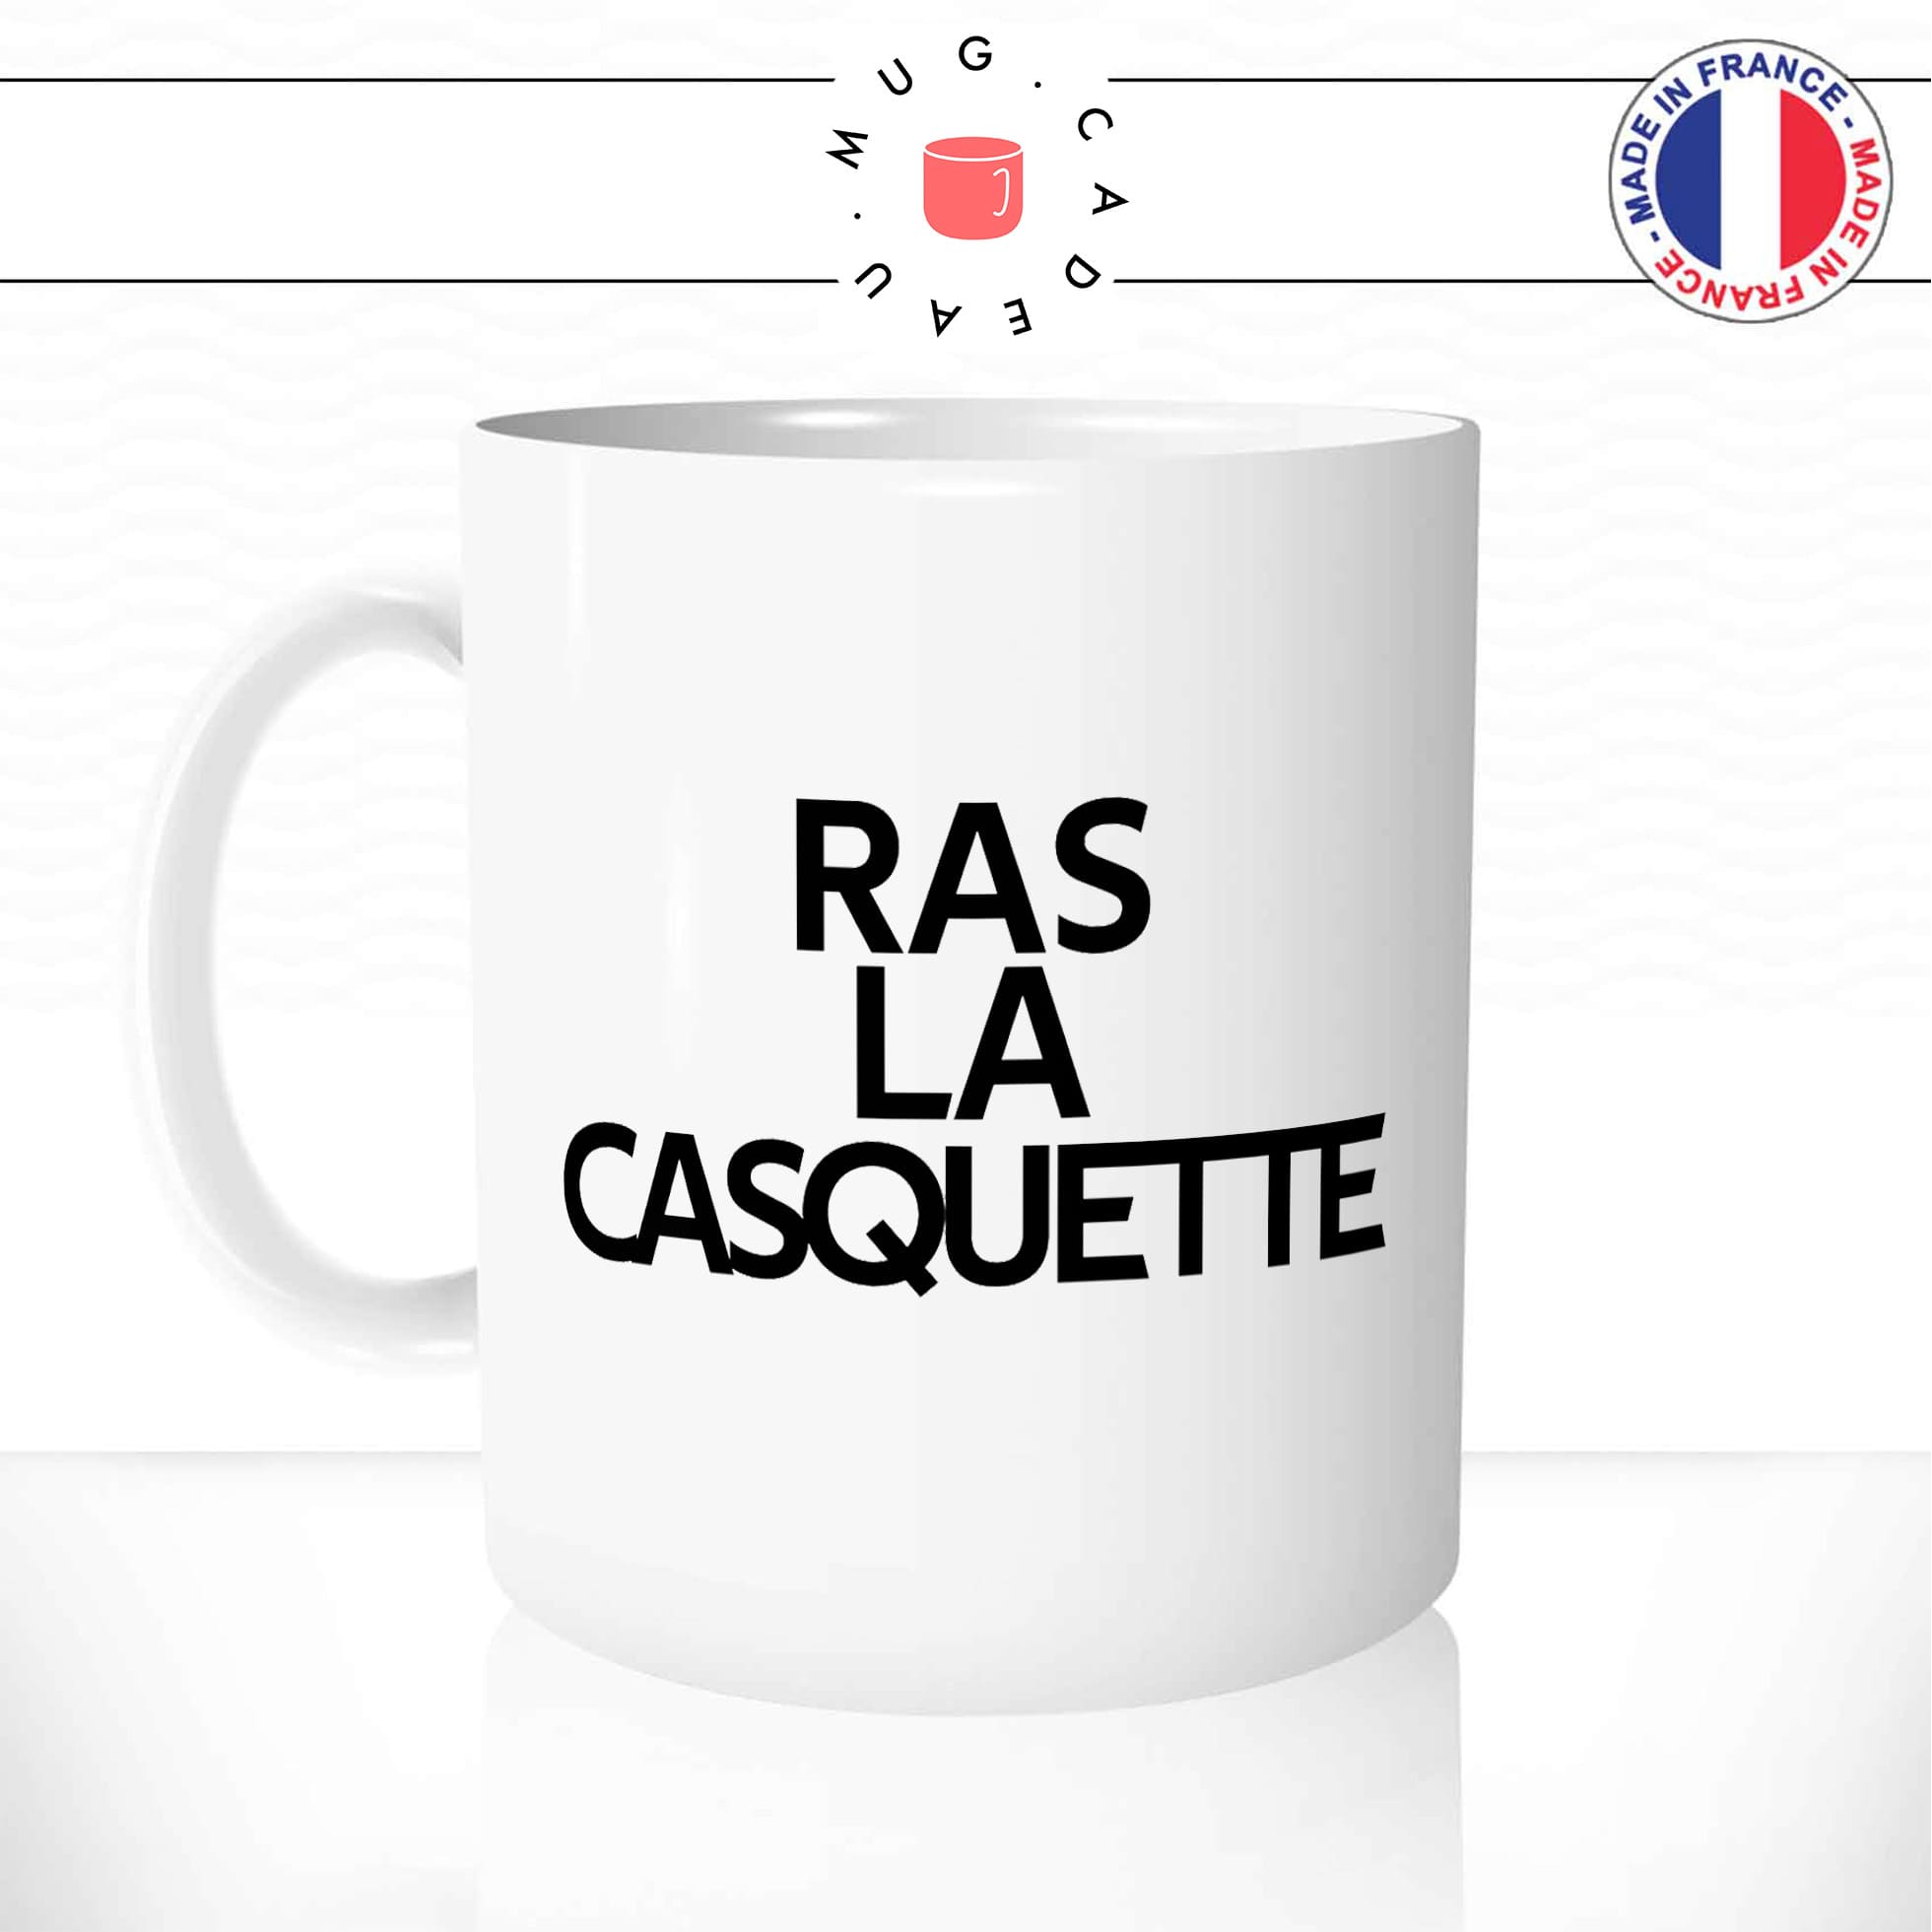 mug-tasse-blanc-ras-la-casquette-expression-francaise-j'en-ai-marre-humour-fun-idée-cadeau-originale-cool